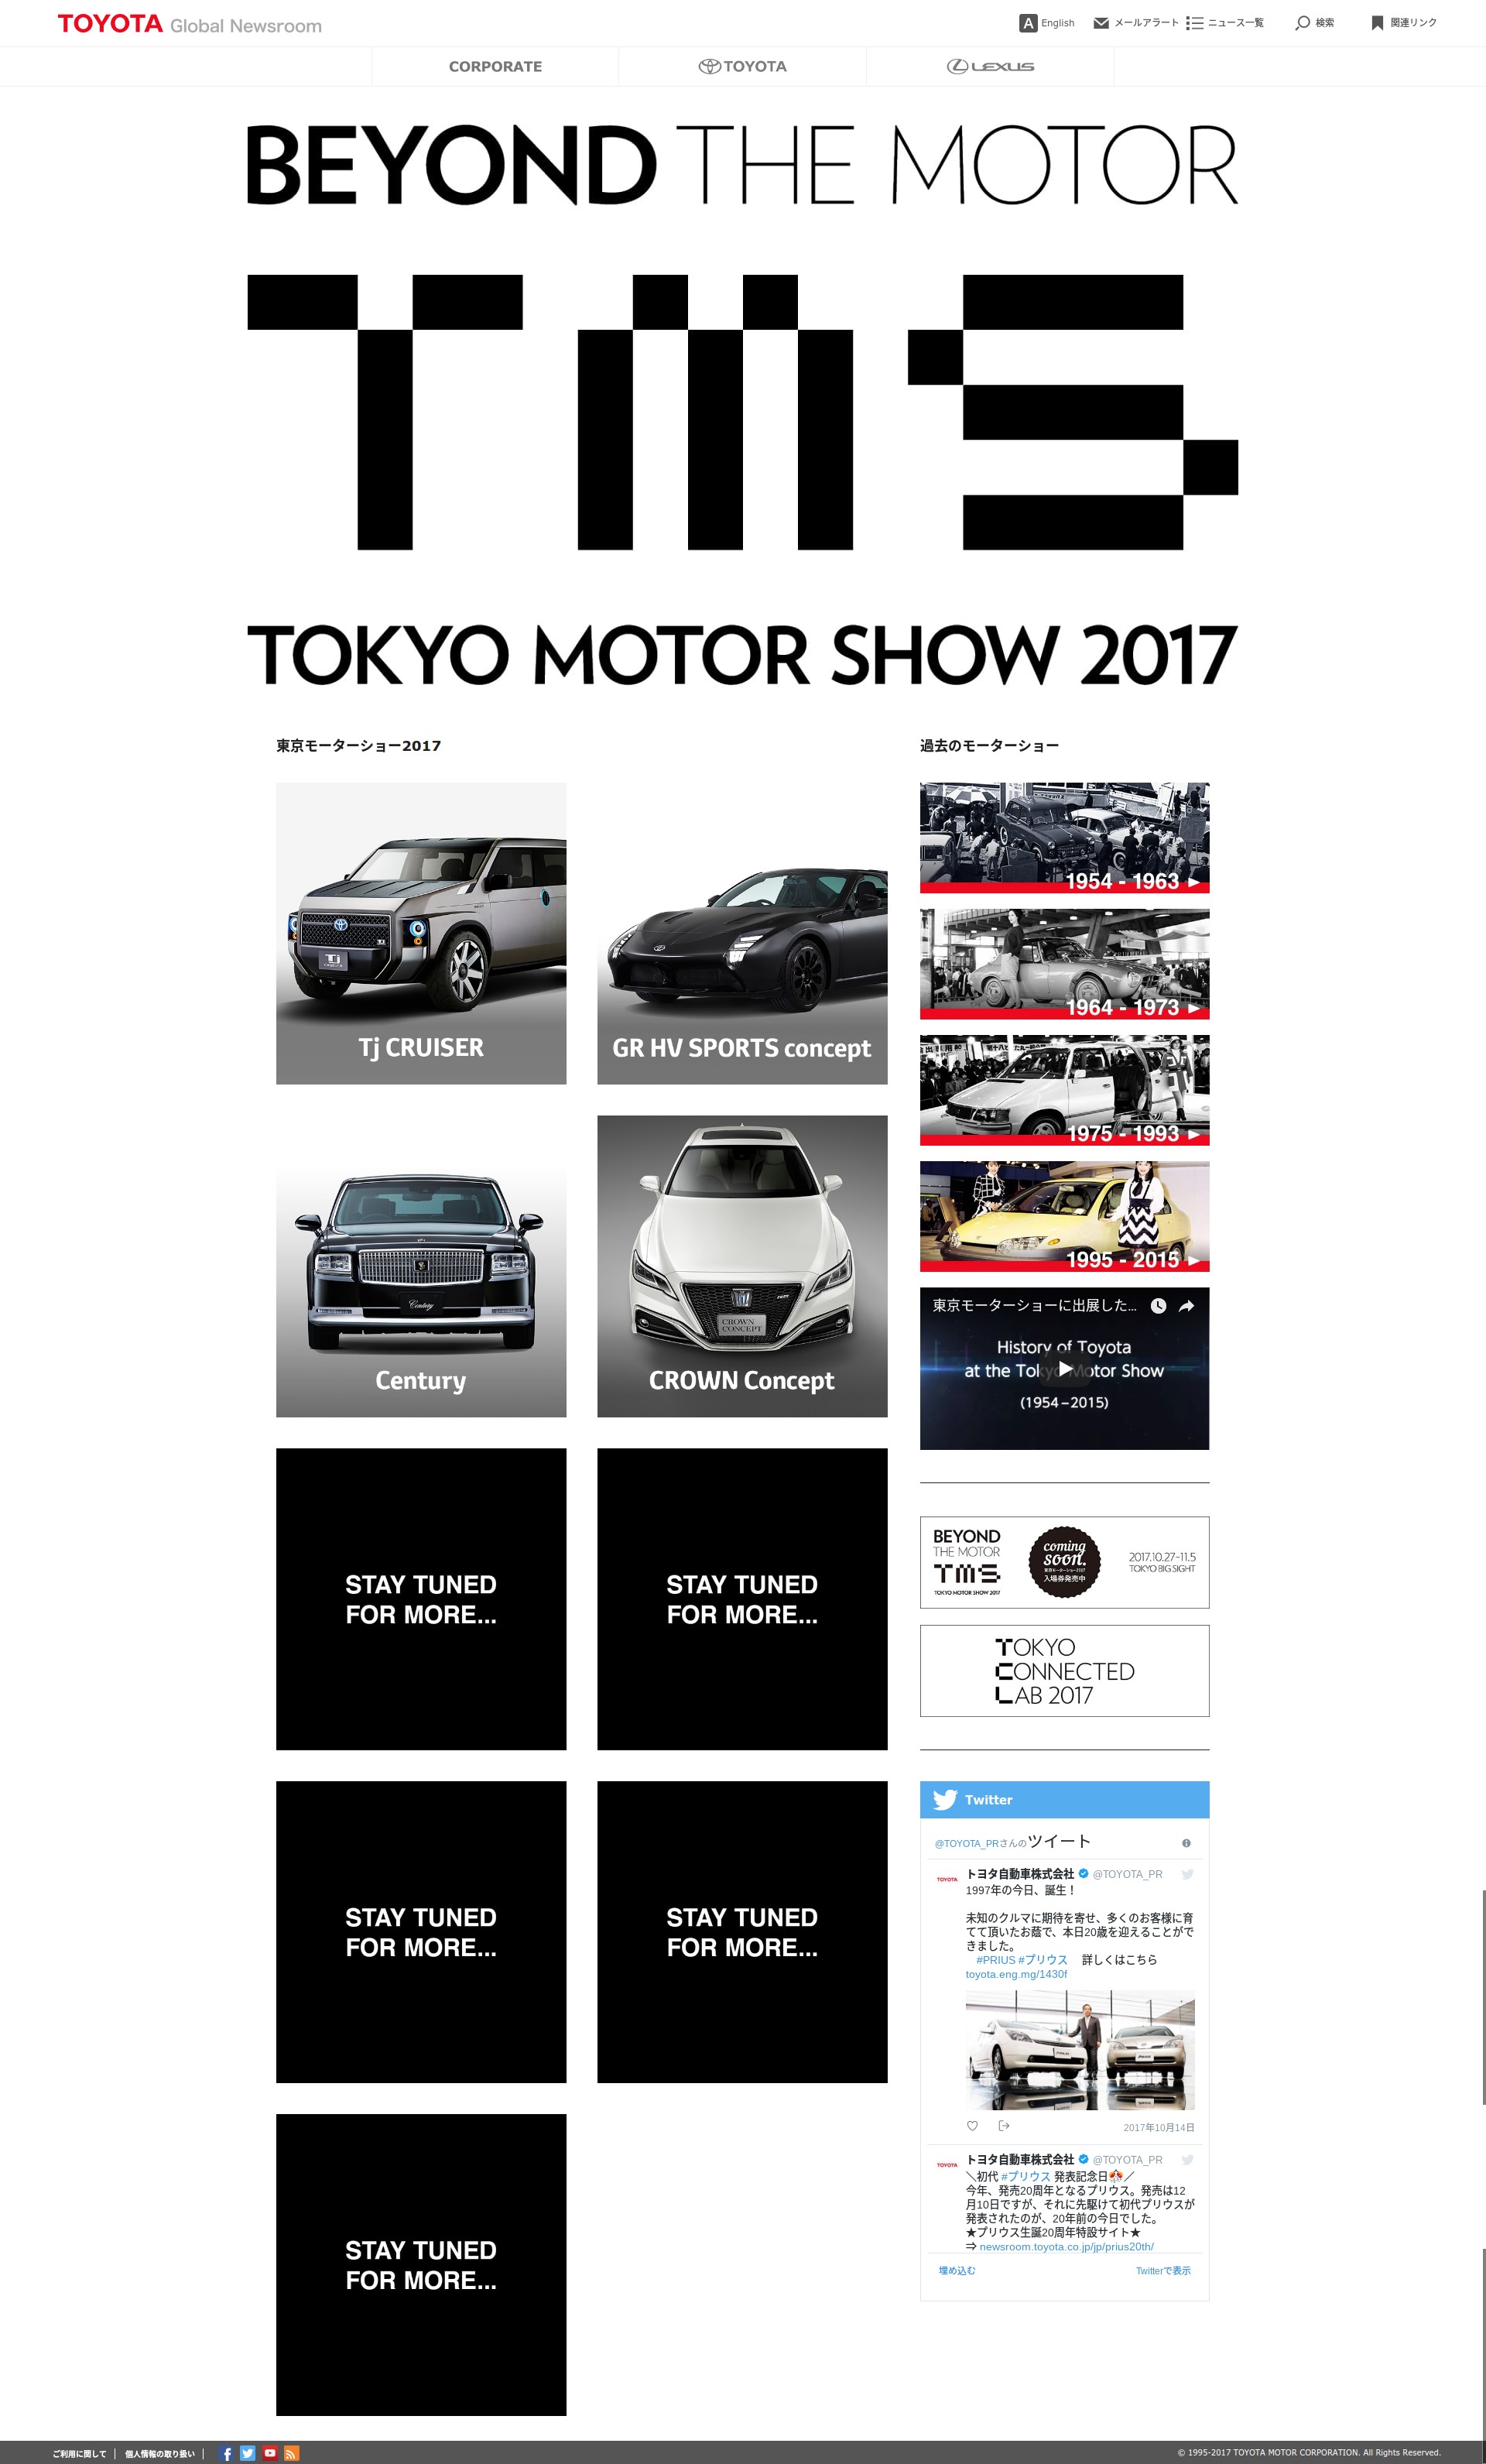 東京モーターショー2017 特設サイト トヨタグローバルニュースルーム (2)